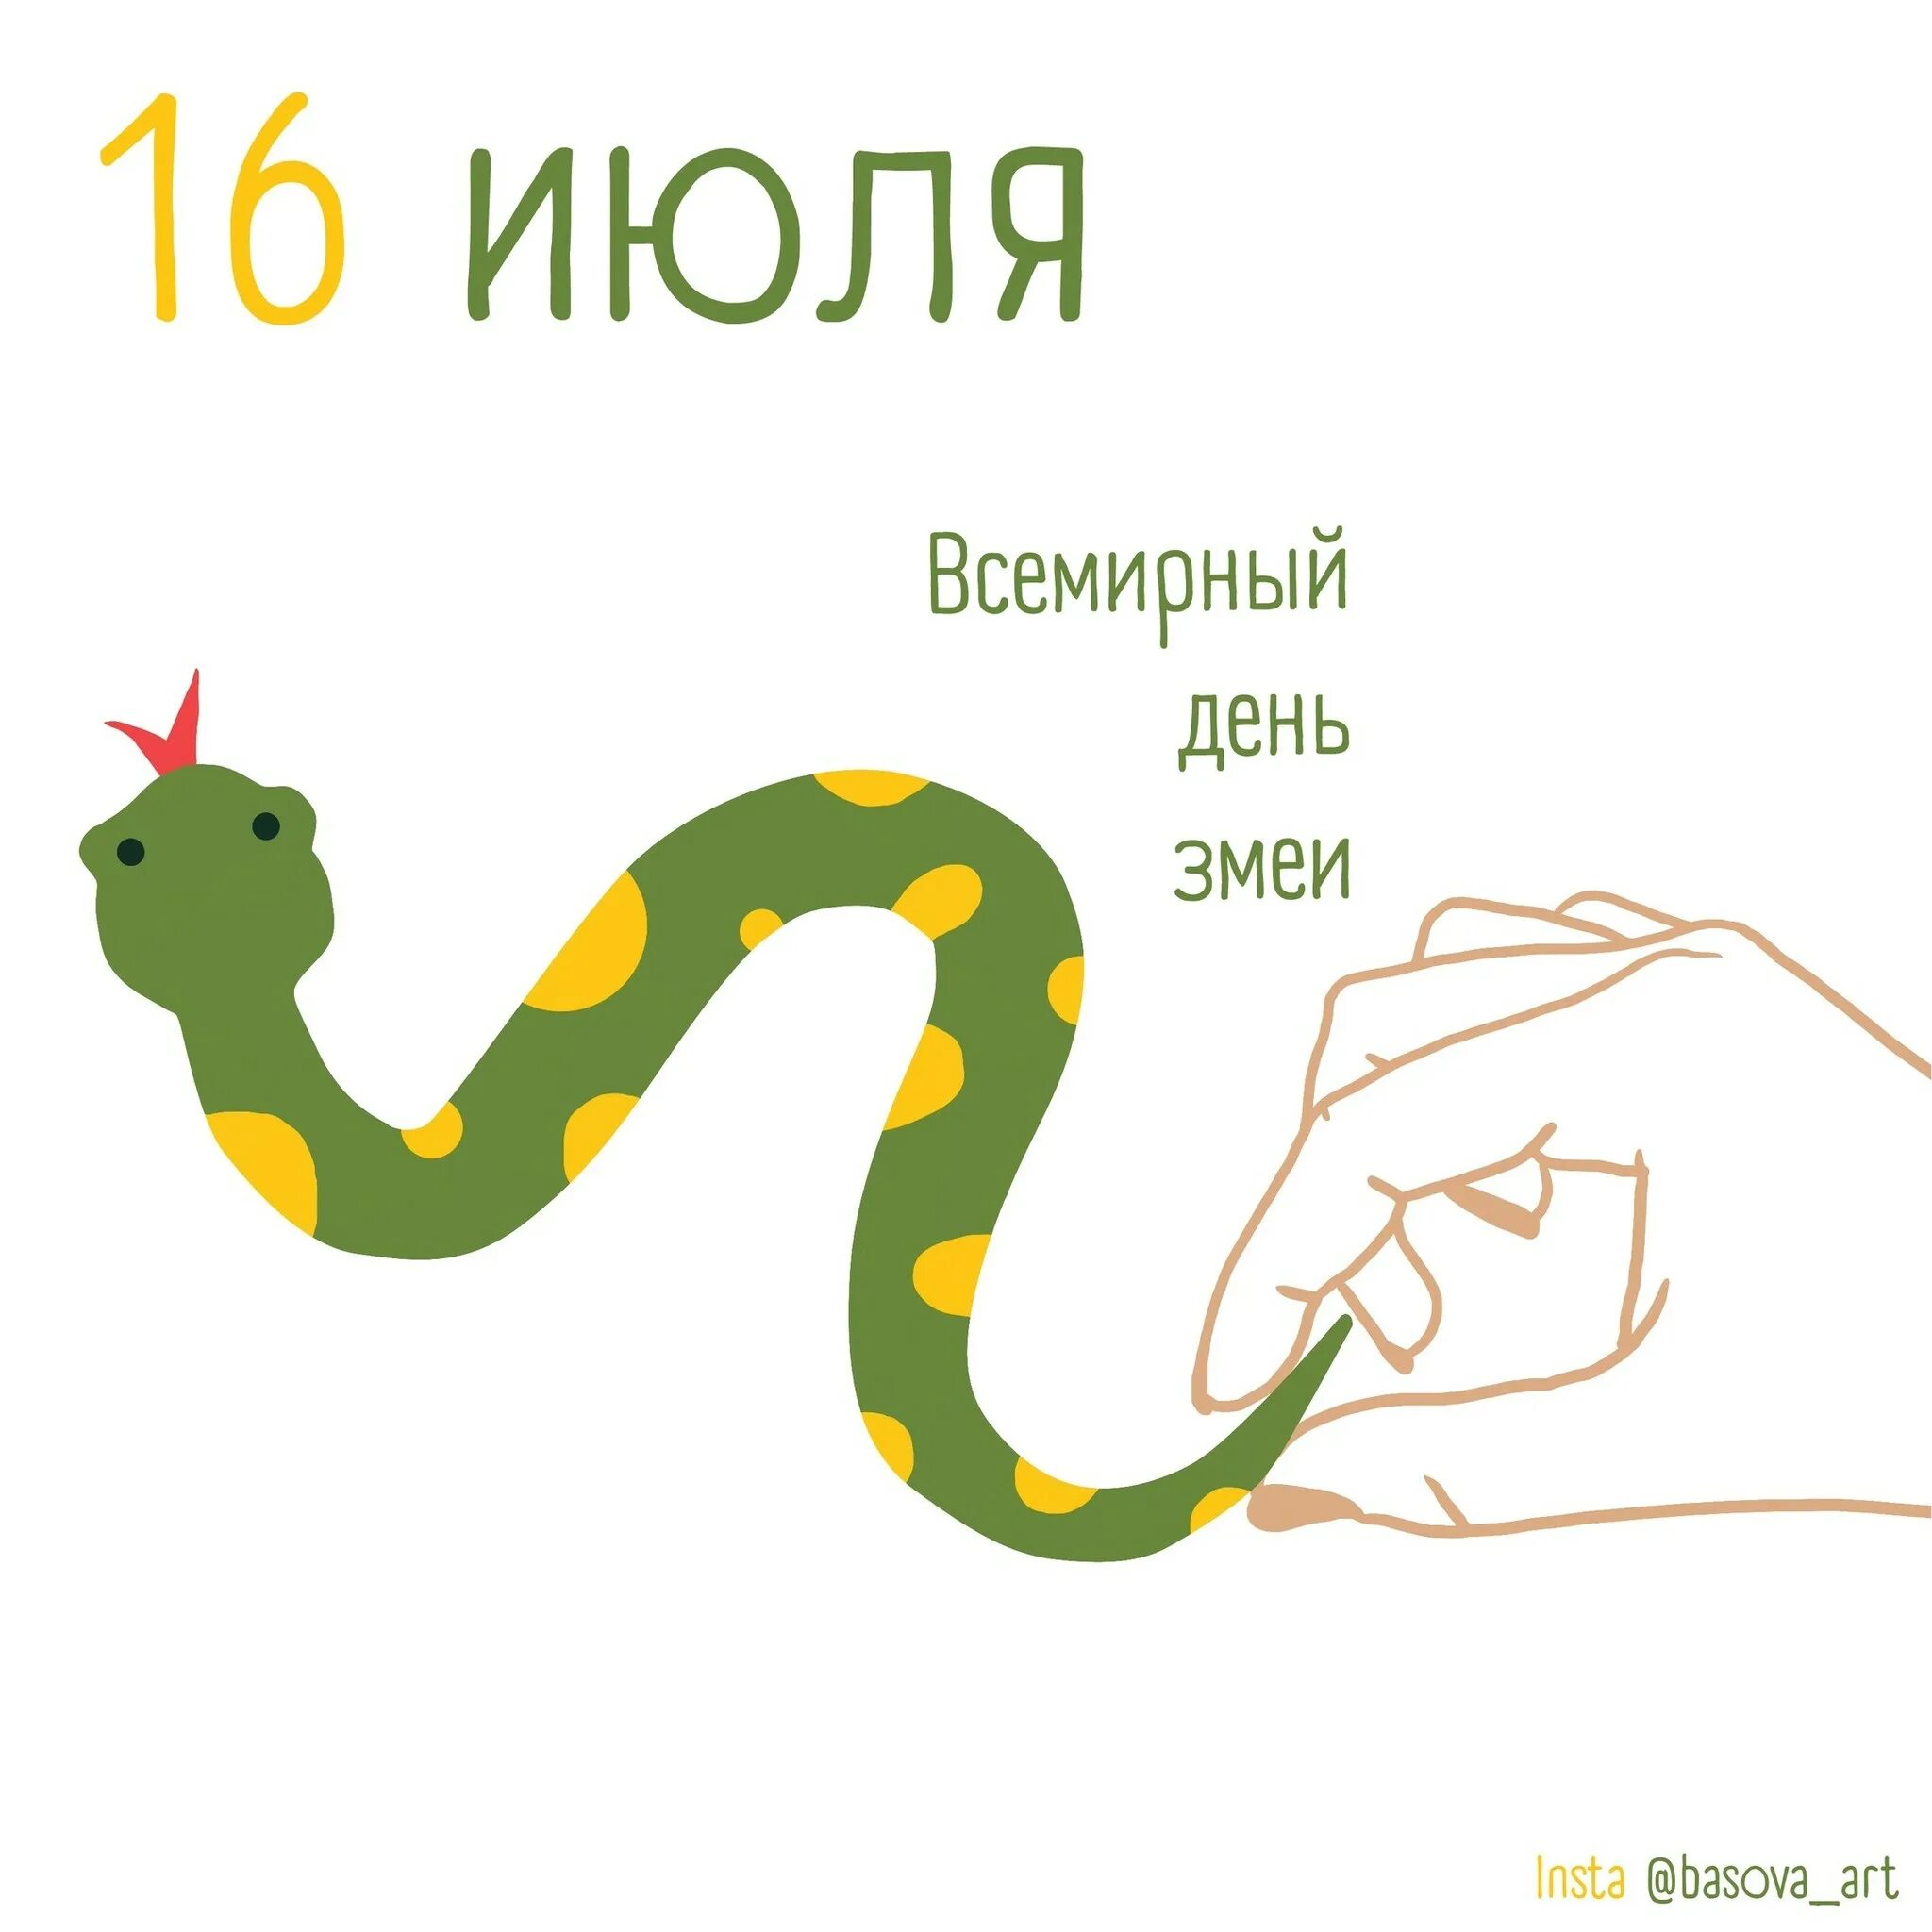 Какой праздник змей. Всемирный день змеи (World Snake Day). Всемирный день змеи 16 июля. День змей 16 июля. С праздником змеи.